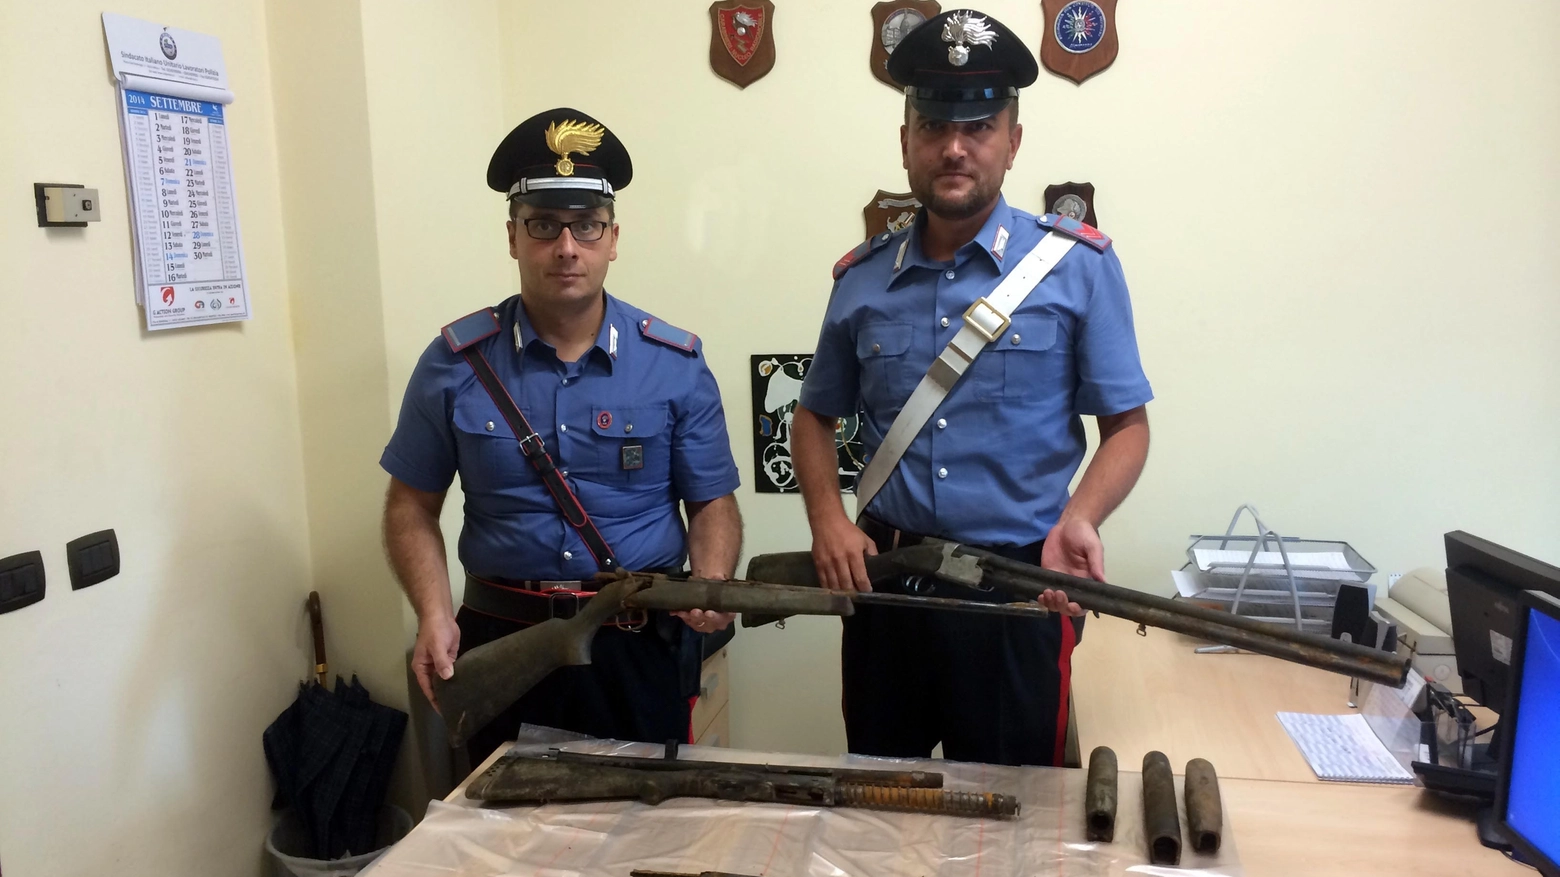 Le armi ritrovate dai carabinieri fra Segrate e Peschiera